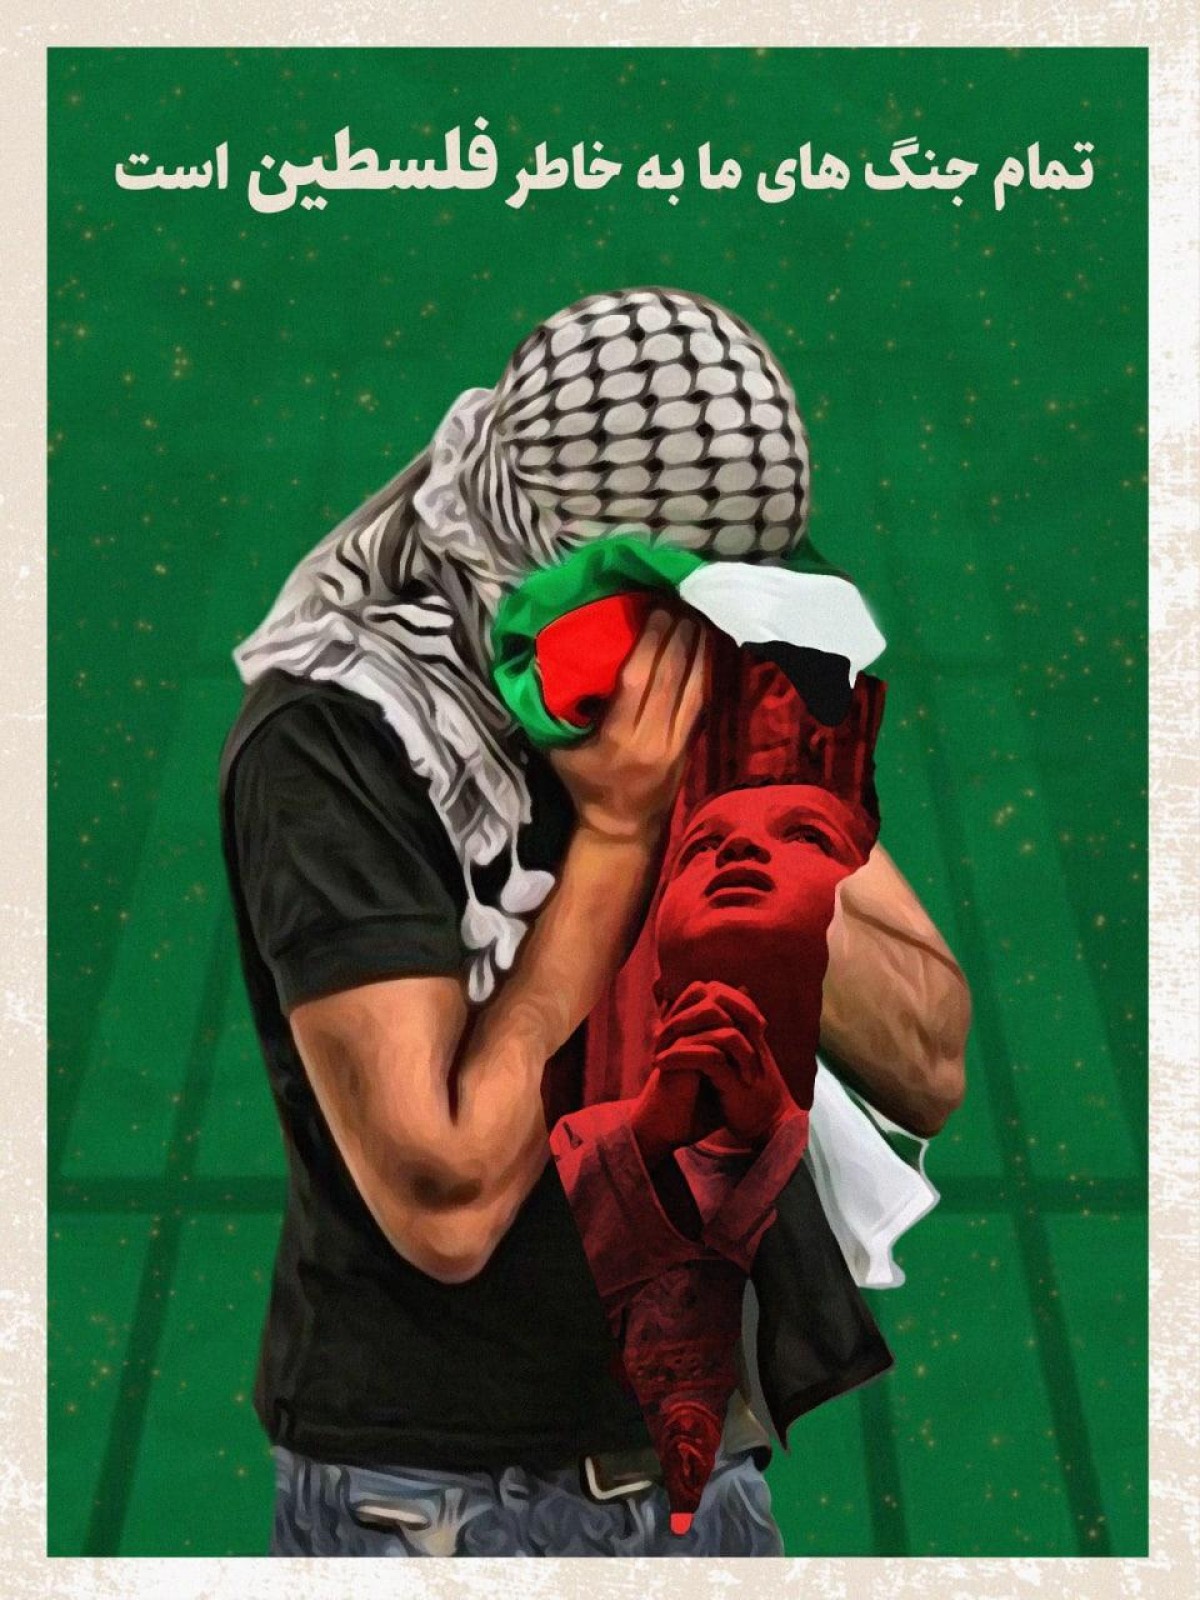  تمام جنگ های ما بخاطر فلسطین است